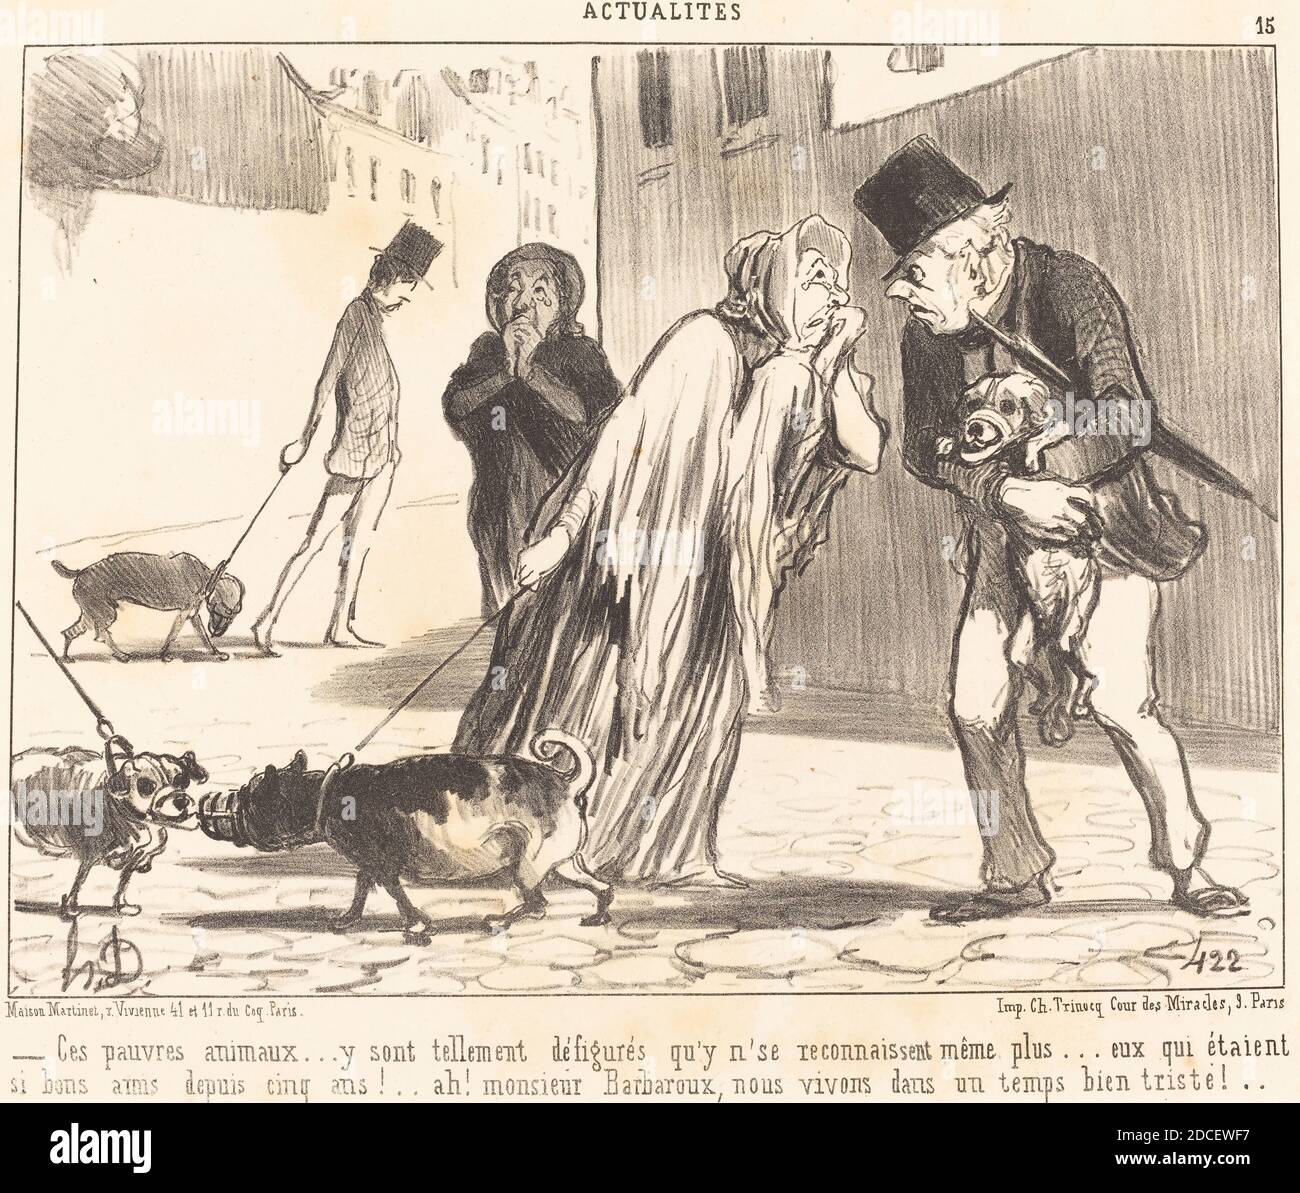 Honoré Daumier, (artist), French, 1808 - 1879, Ces pauvres animaux... n'se reconnaissent... plus..., Actualités, (series), 1852, lithograph Stock Photo